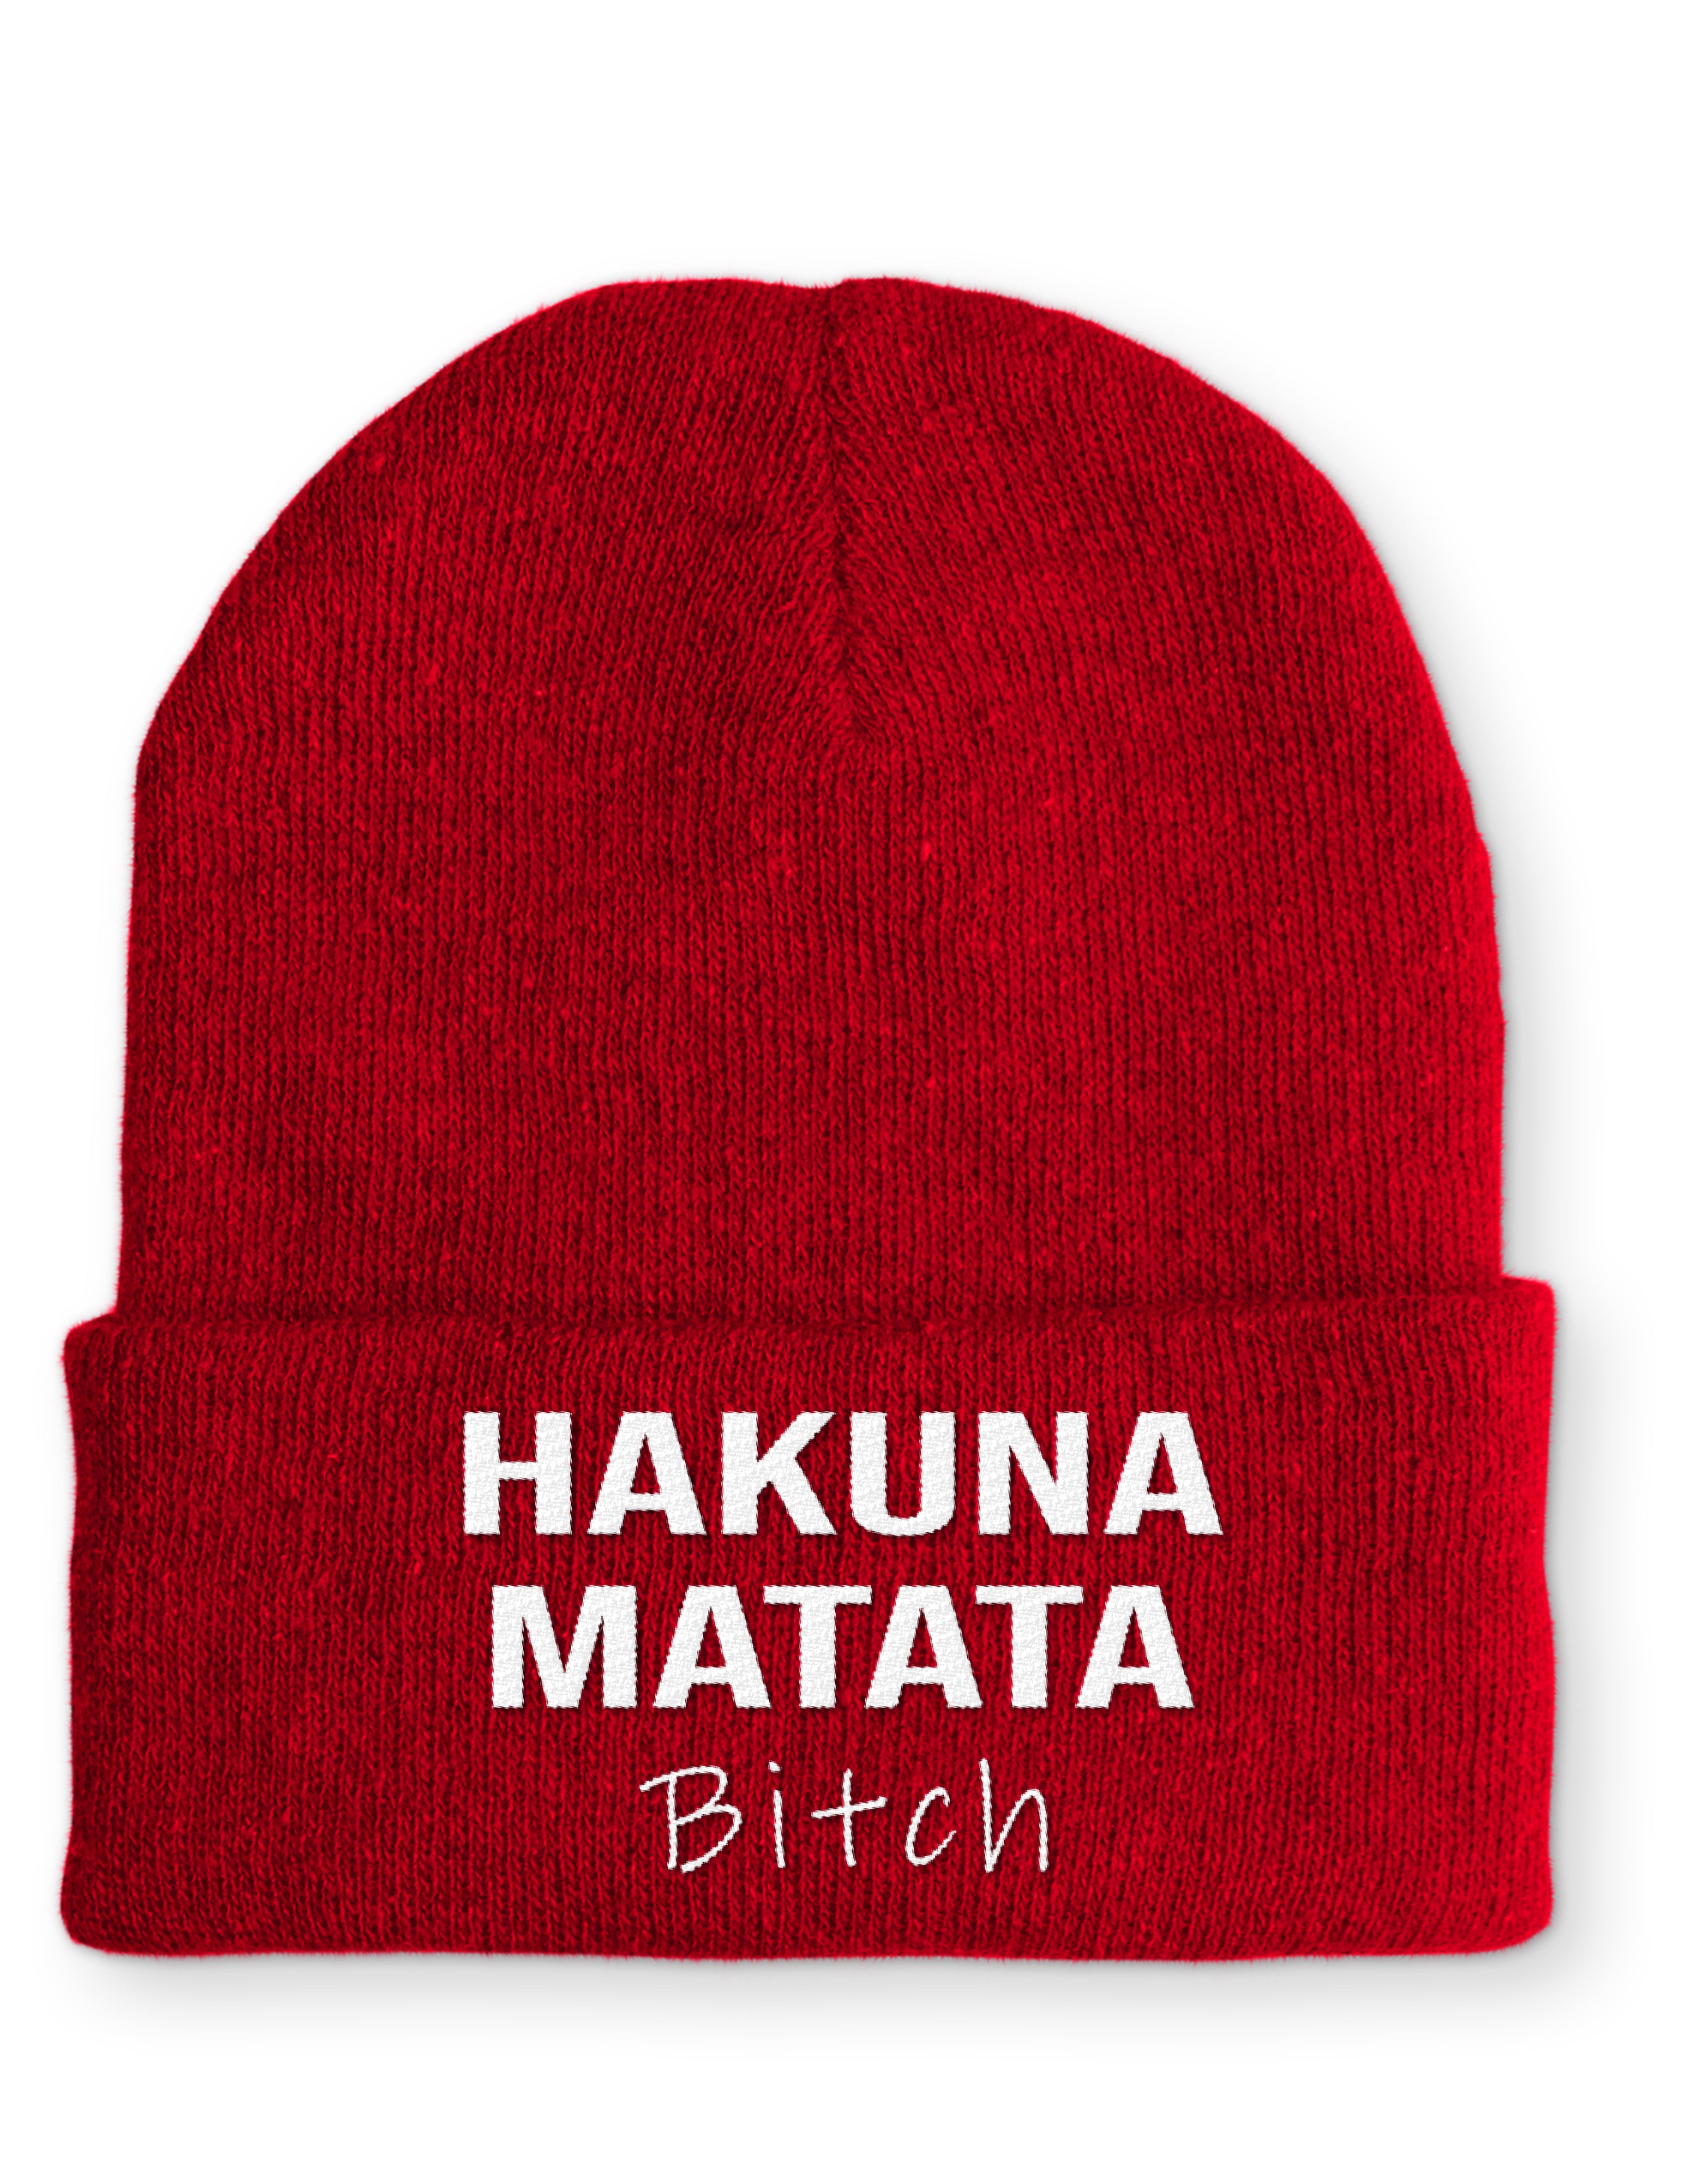 Mütze Hakuna Matata Bitch